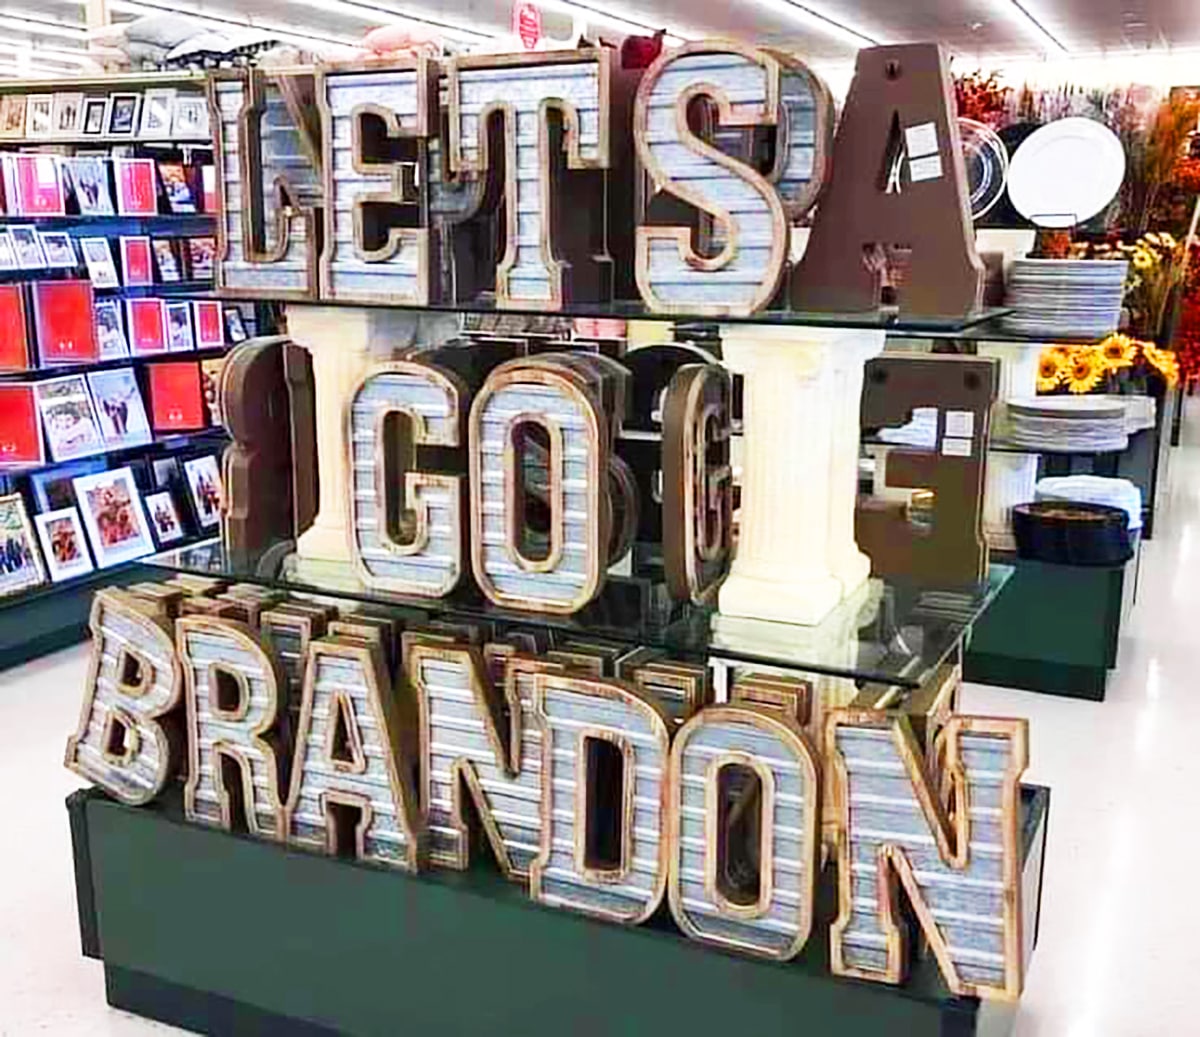 Miért jelenti azt a “Let’s go, Brandon!” mondat a kortárs amerikai angolban, hogy a “kurva anyád, te komcsi”, és miért lett mém belőle